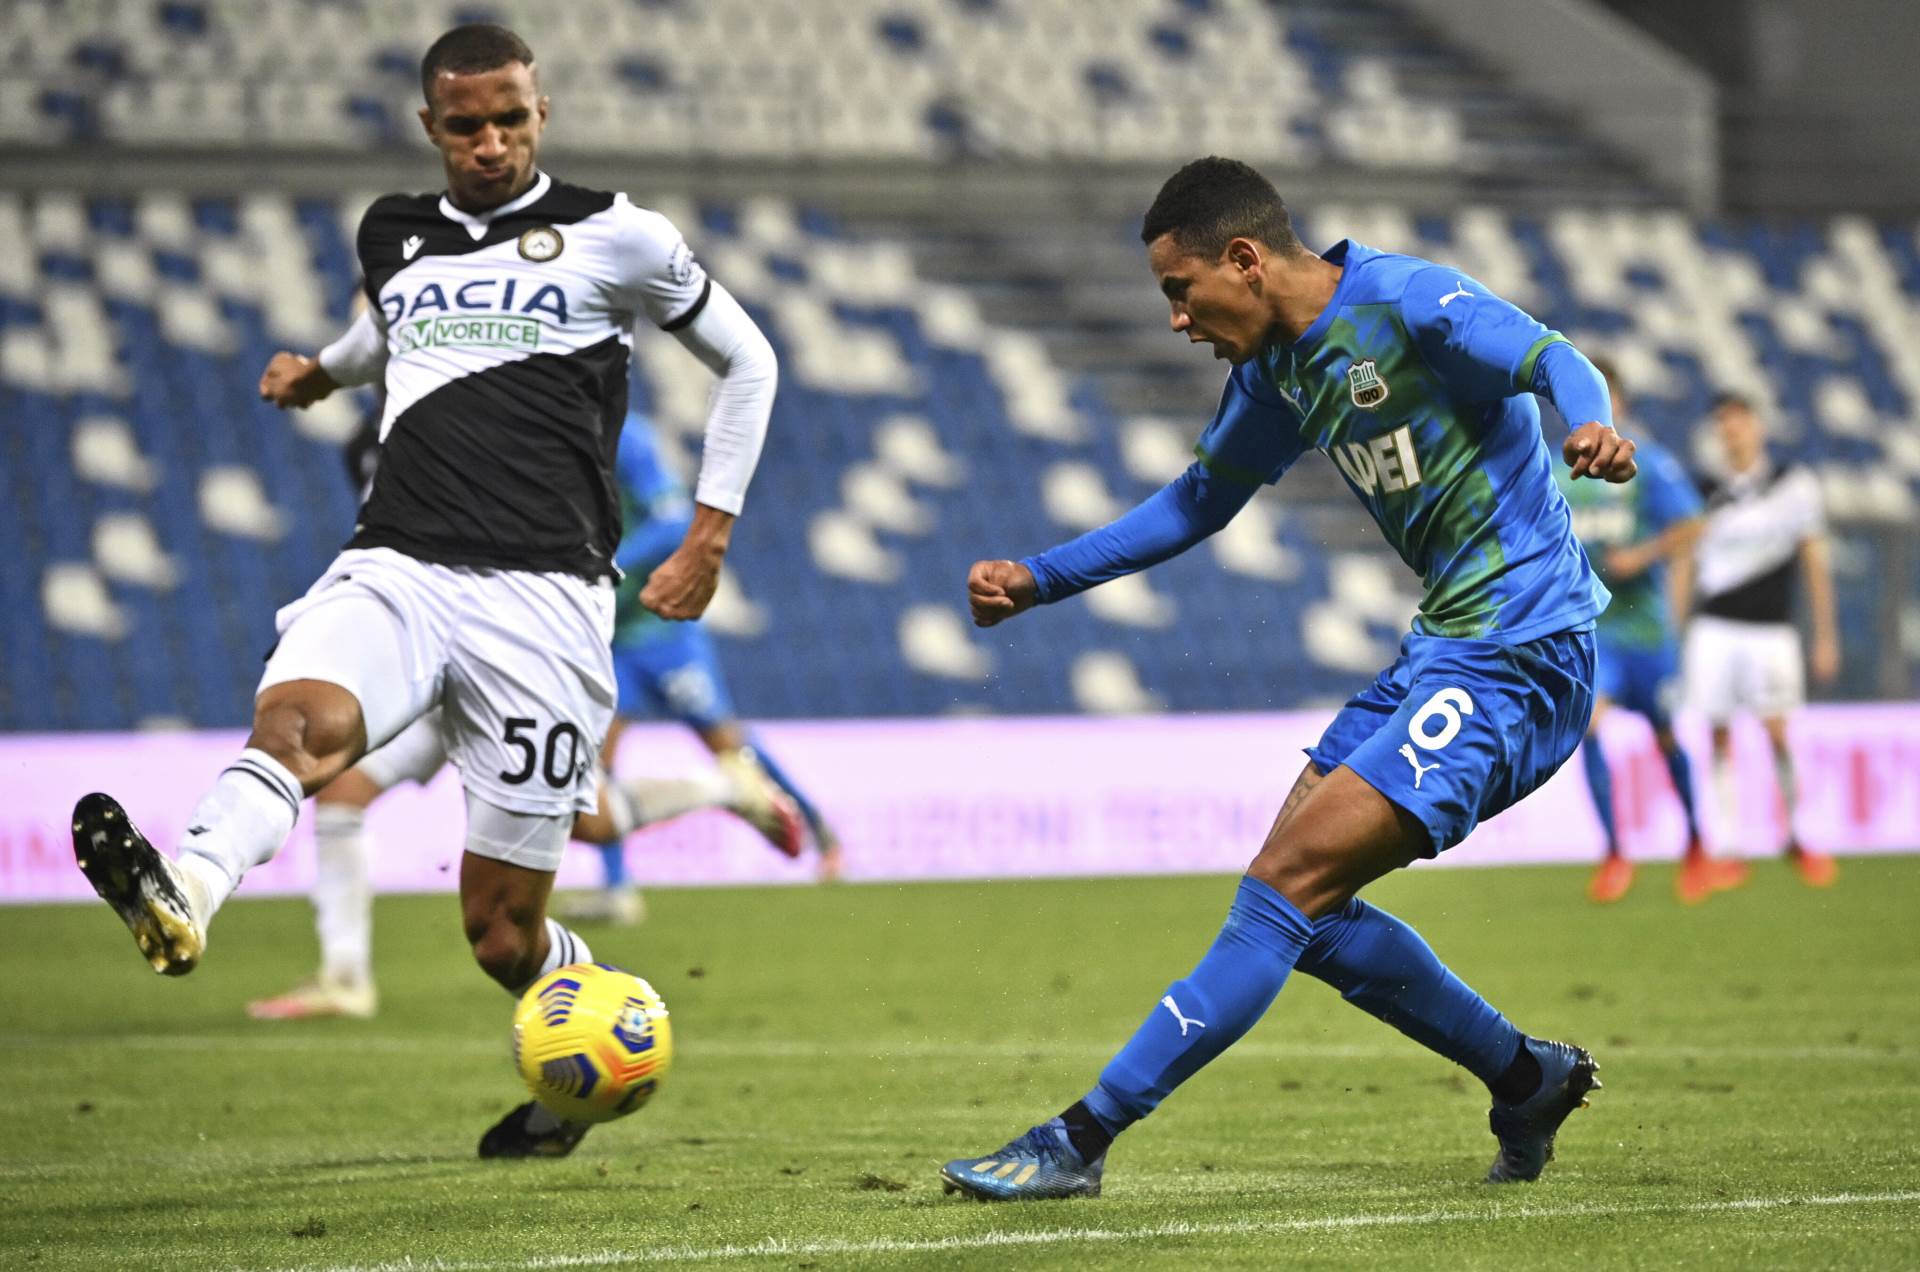  Sasuolo - Udineze 0:0 Serija A 7. kolo 